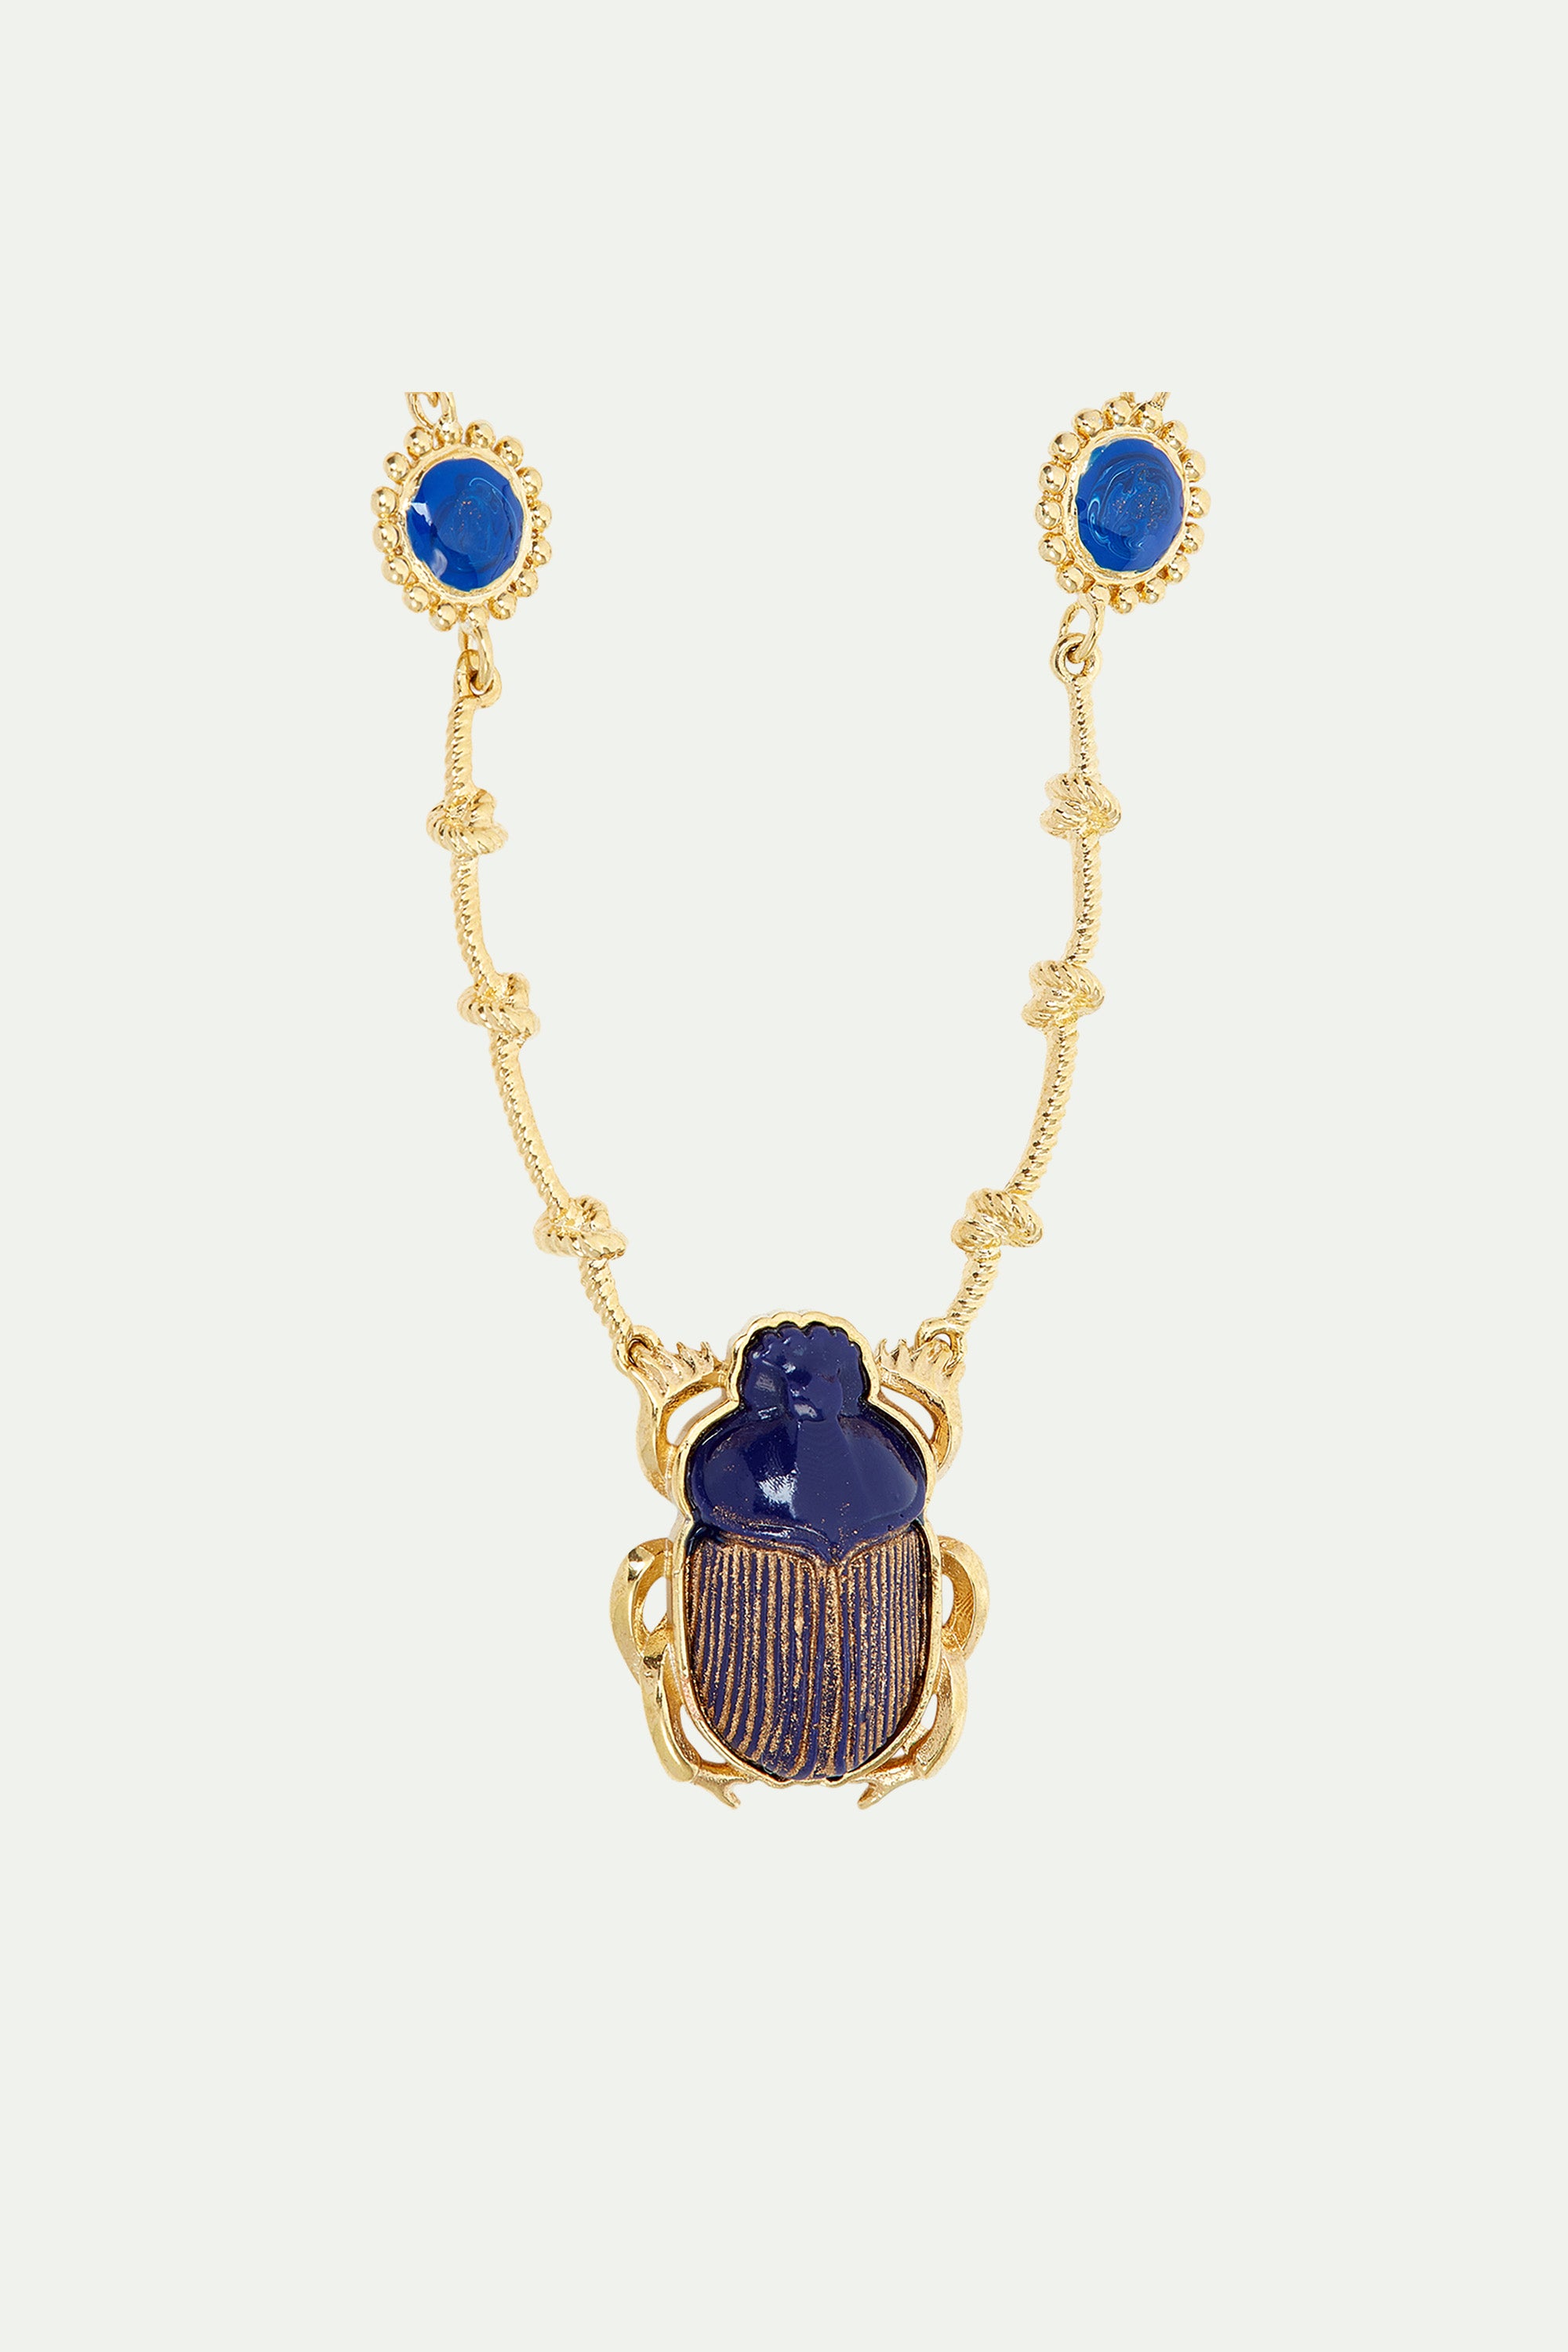 Collar pendiente escarabajo azul sagrado de Egipto